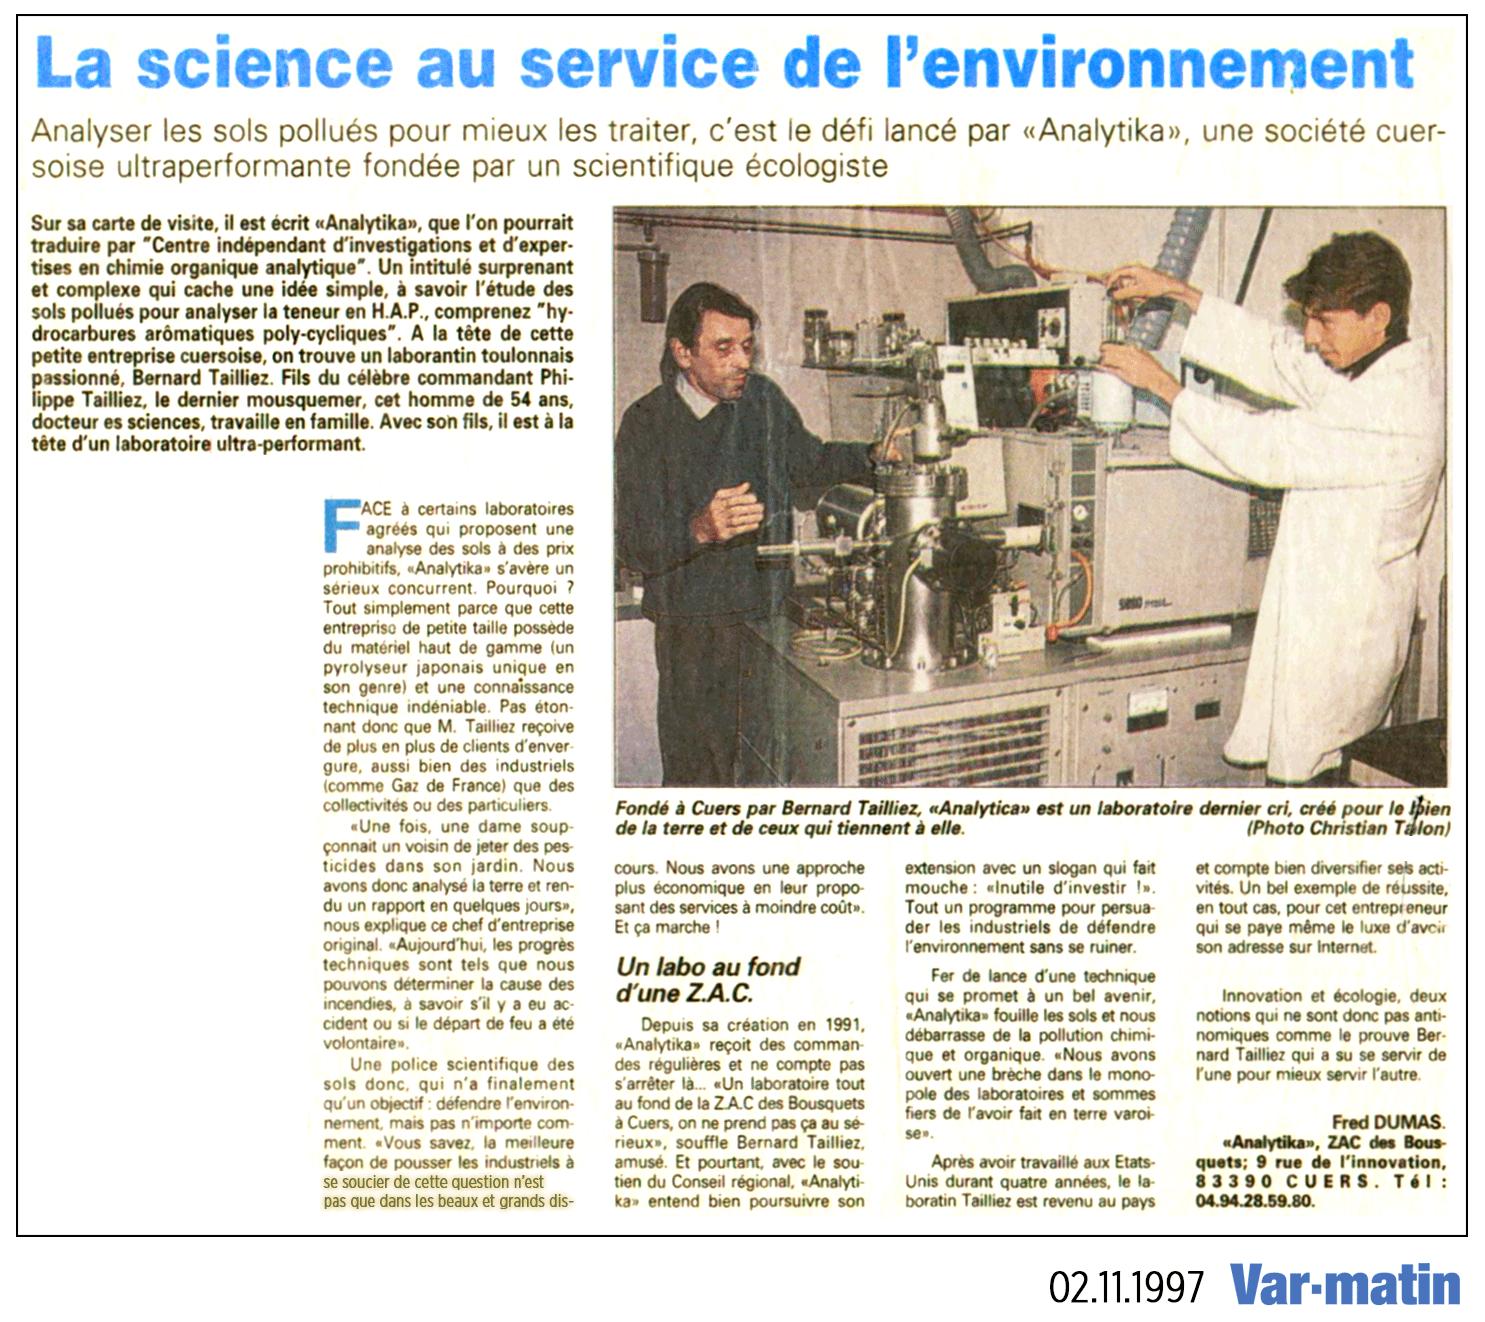 02.11.1997 > VAR MATIN : "La science au service de l'Environnement"